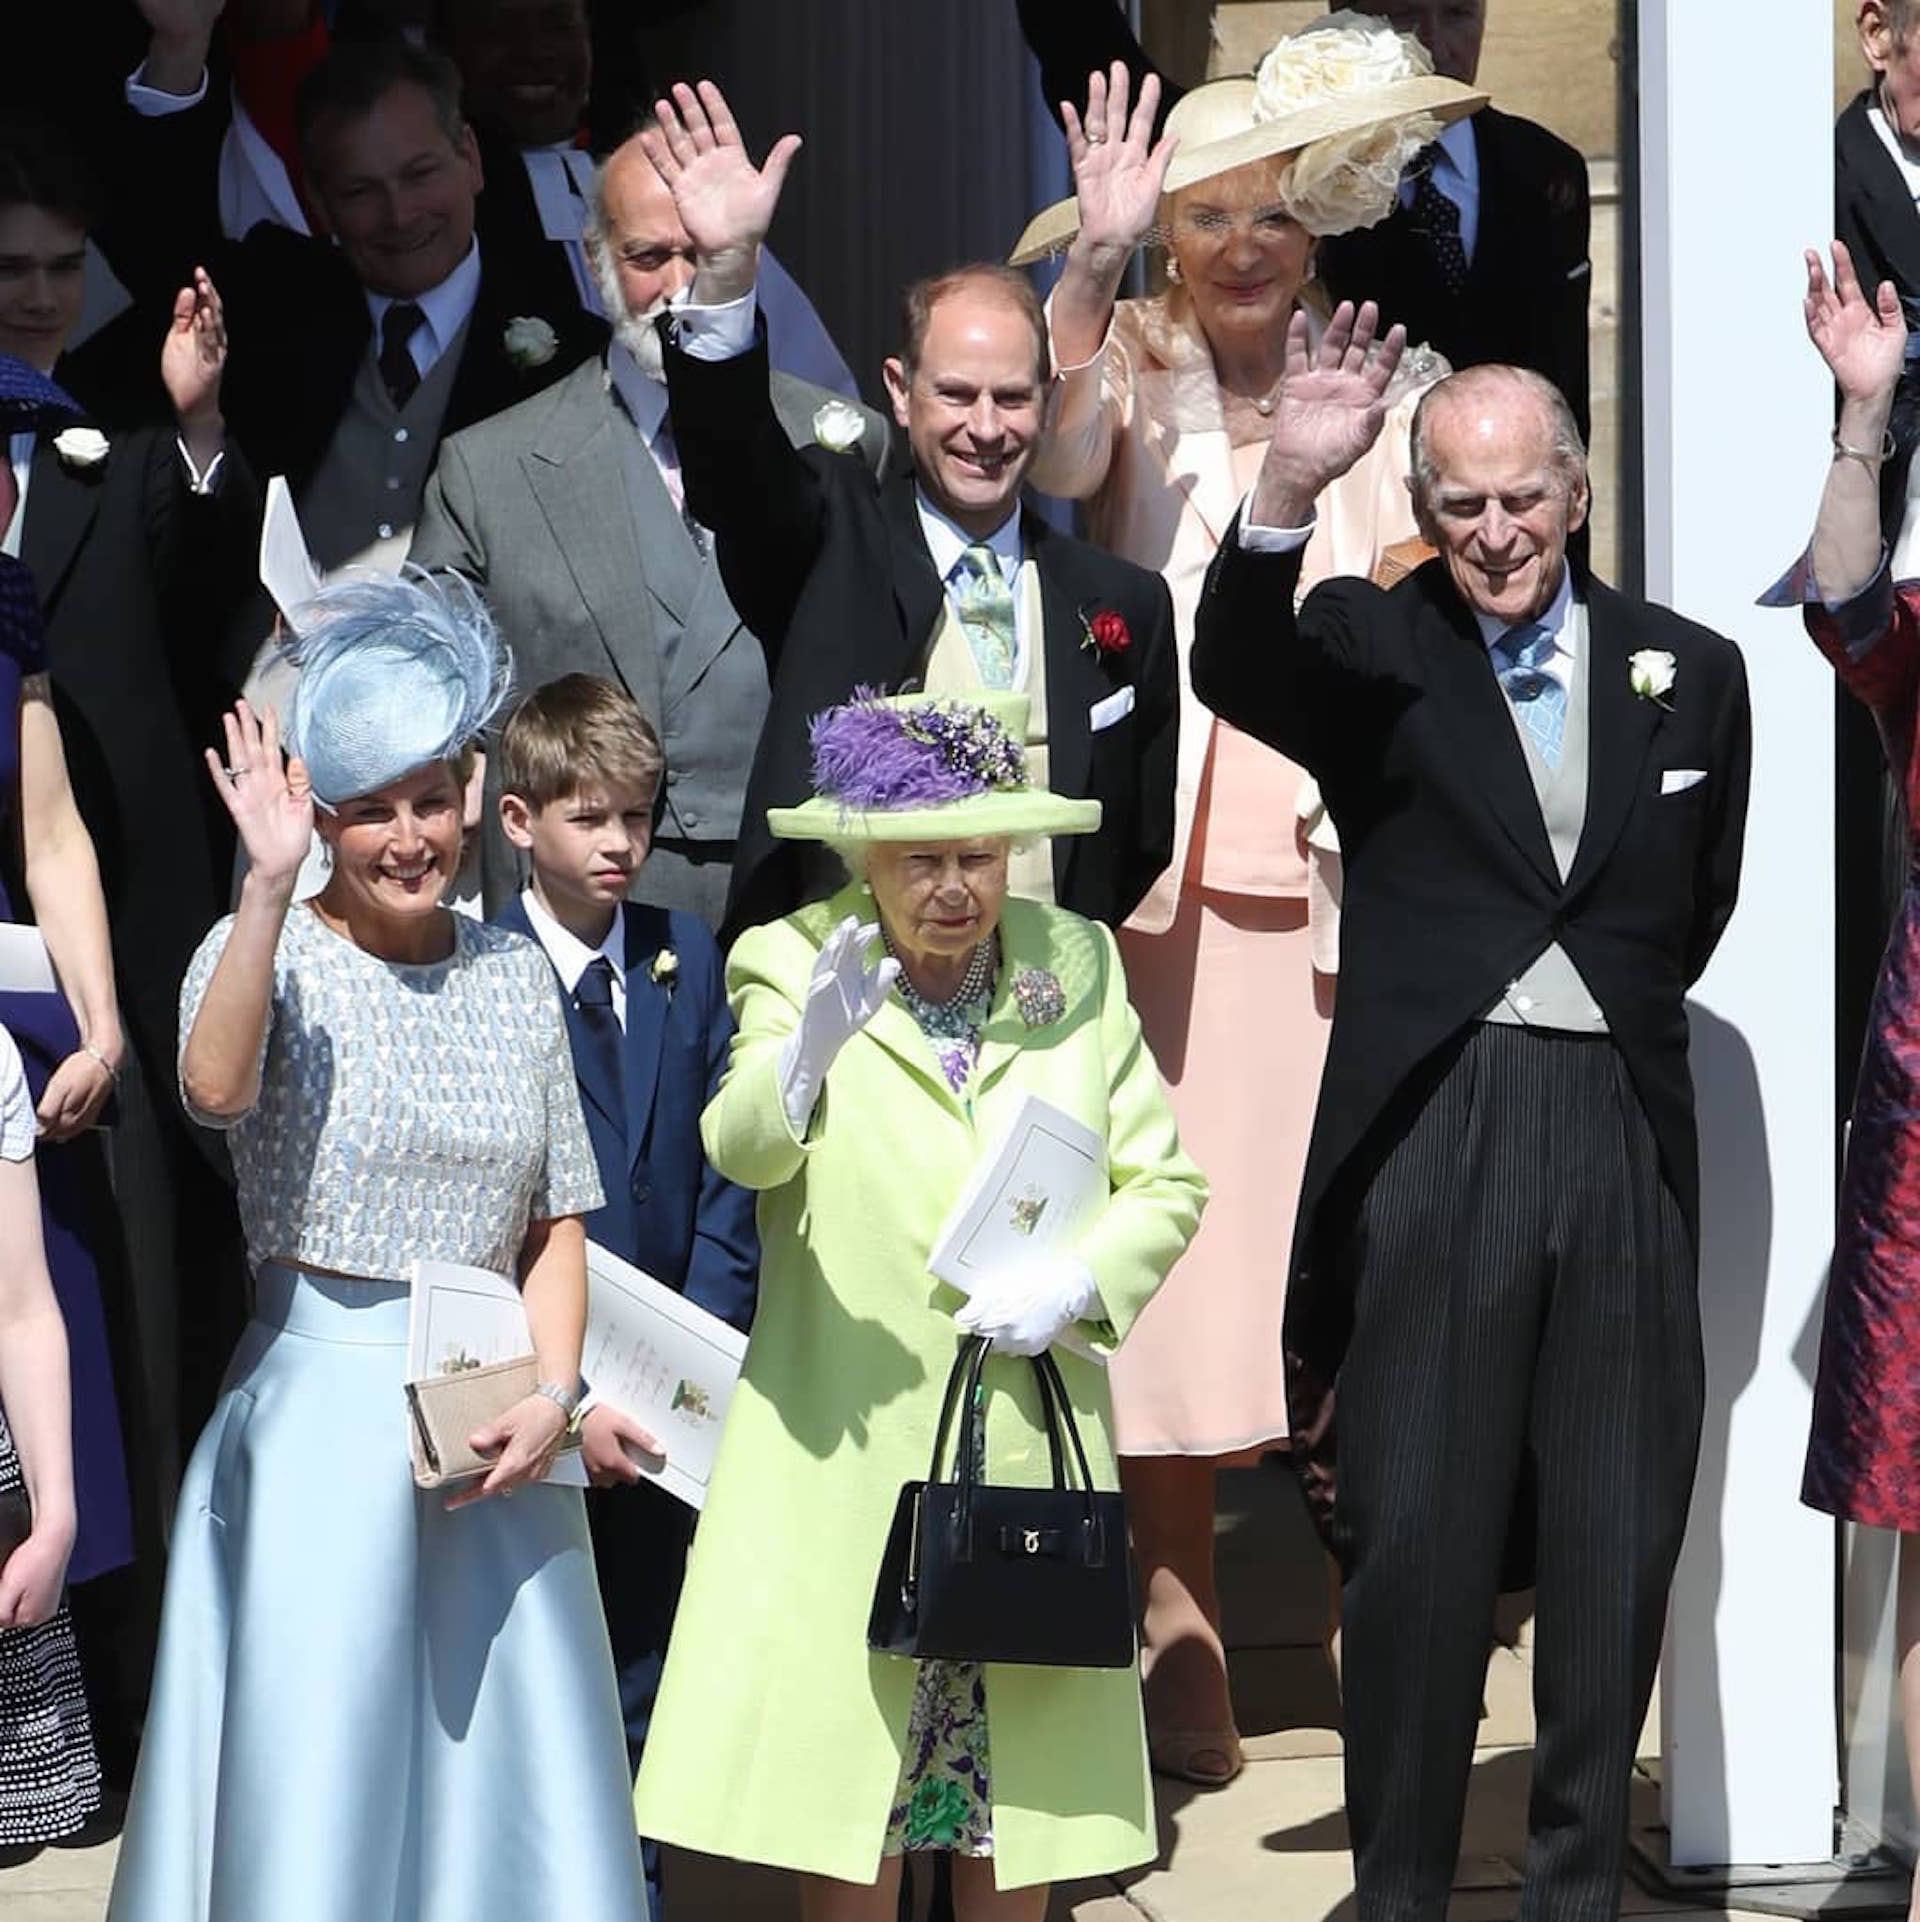 La reina Isabel II y su esposo Felipe, retirado de la vida pública desde 2017, en la boda de Meghan Markle y el príncipe Harry en mayo de 2018 